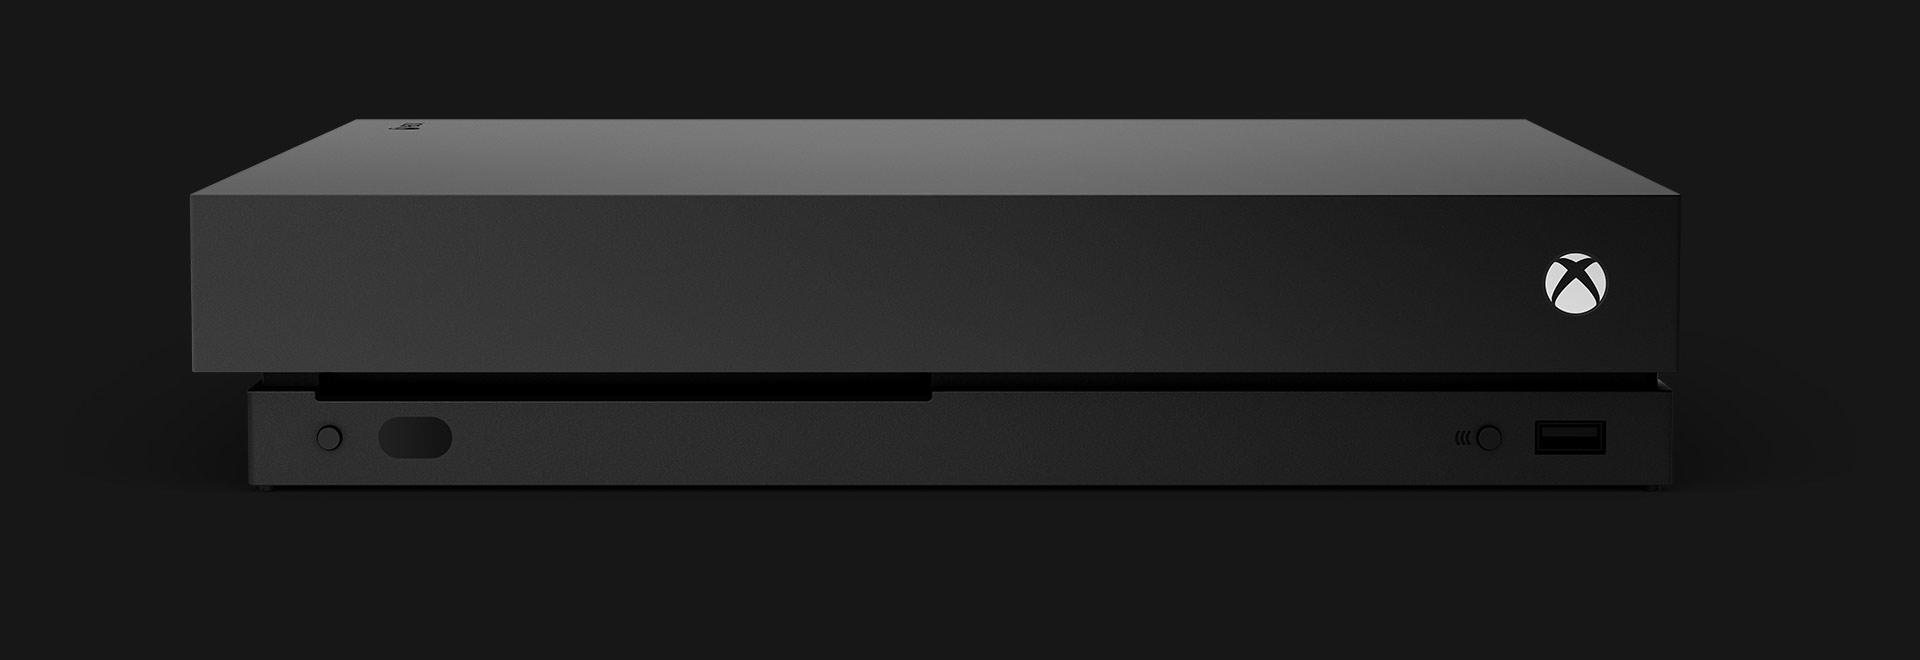 La vista frontal de una consola Xbox One X.